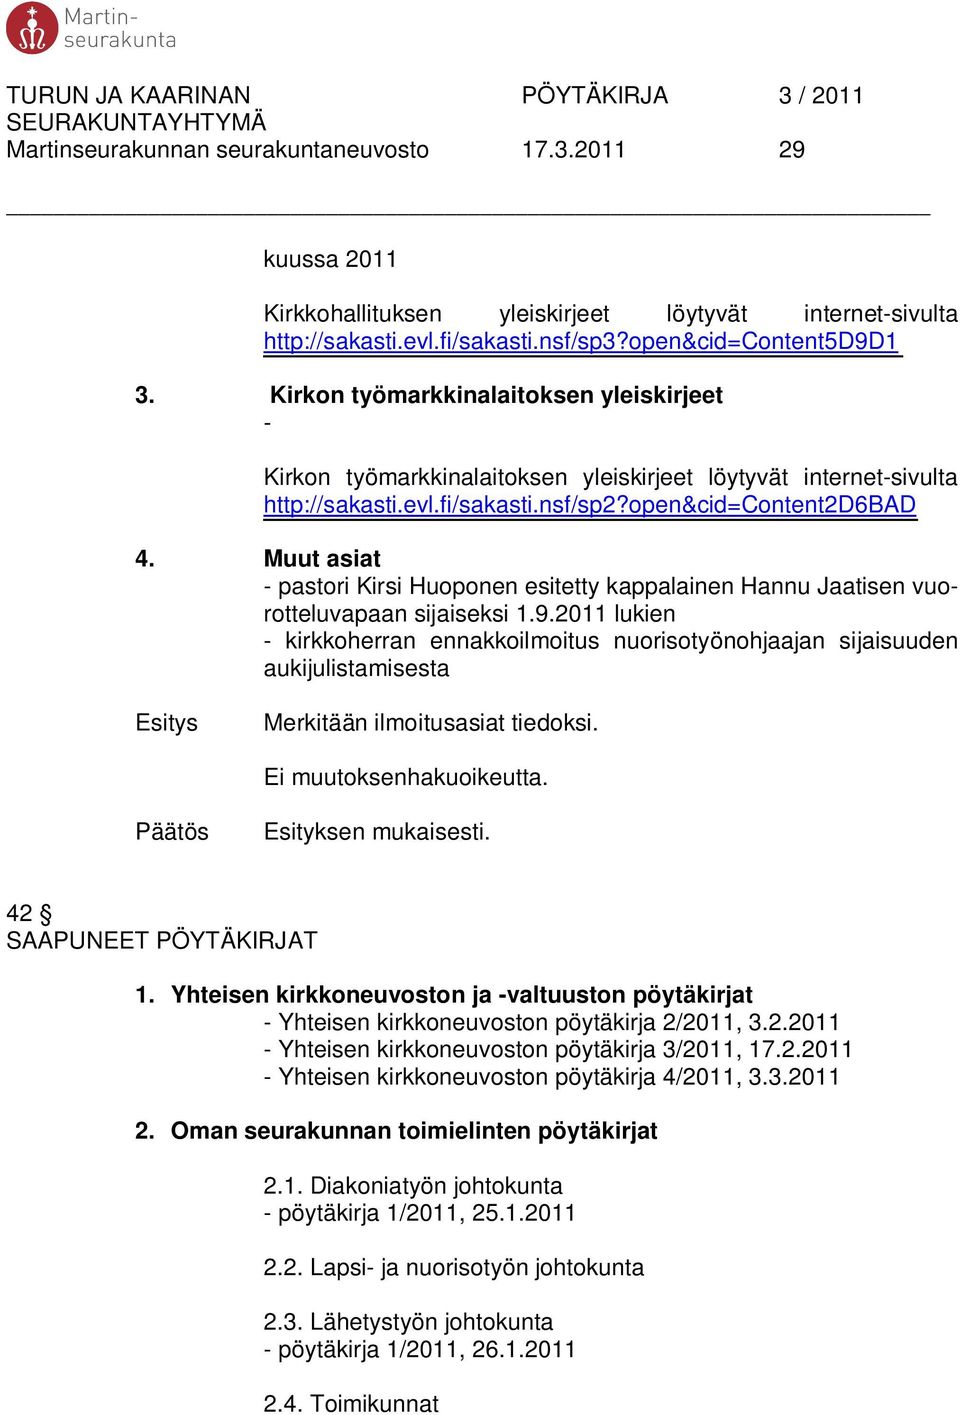 Muut asiat - pastori Kirsi Huoponen esitetty kappalainen Hannu Jaatisen vuorotteluvapaan sijaiseksi 1.9.